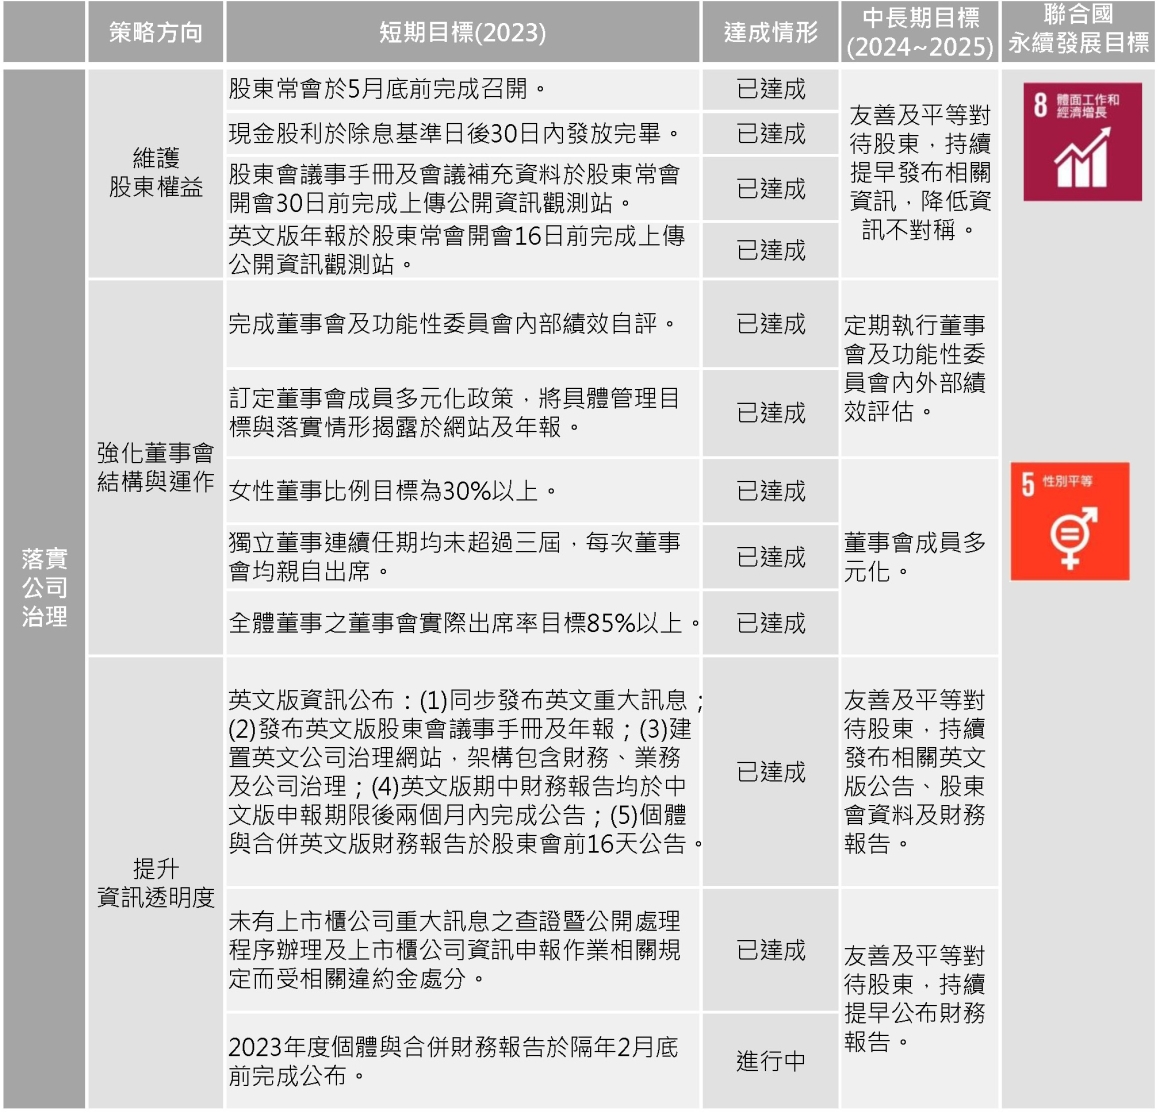 2023-永續目標(ESG)-中文版_G